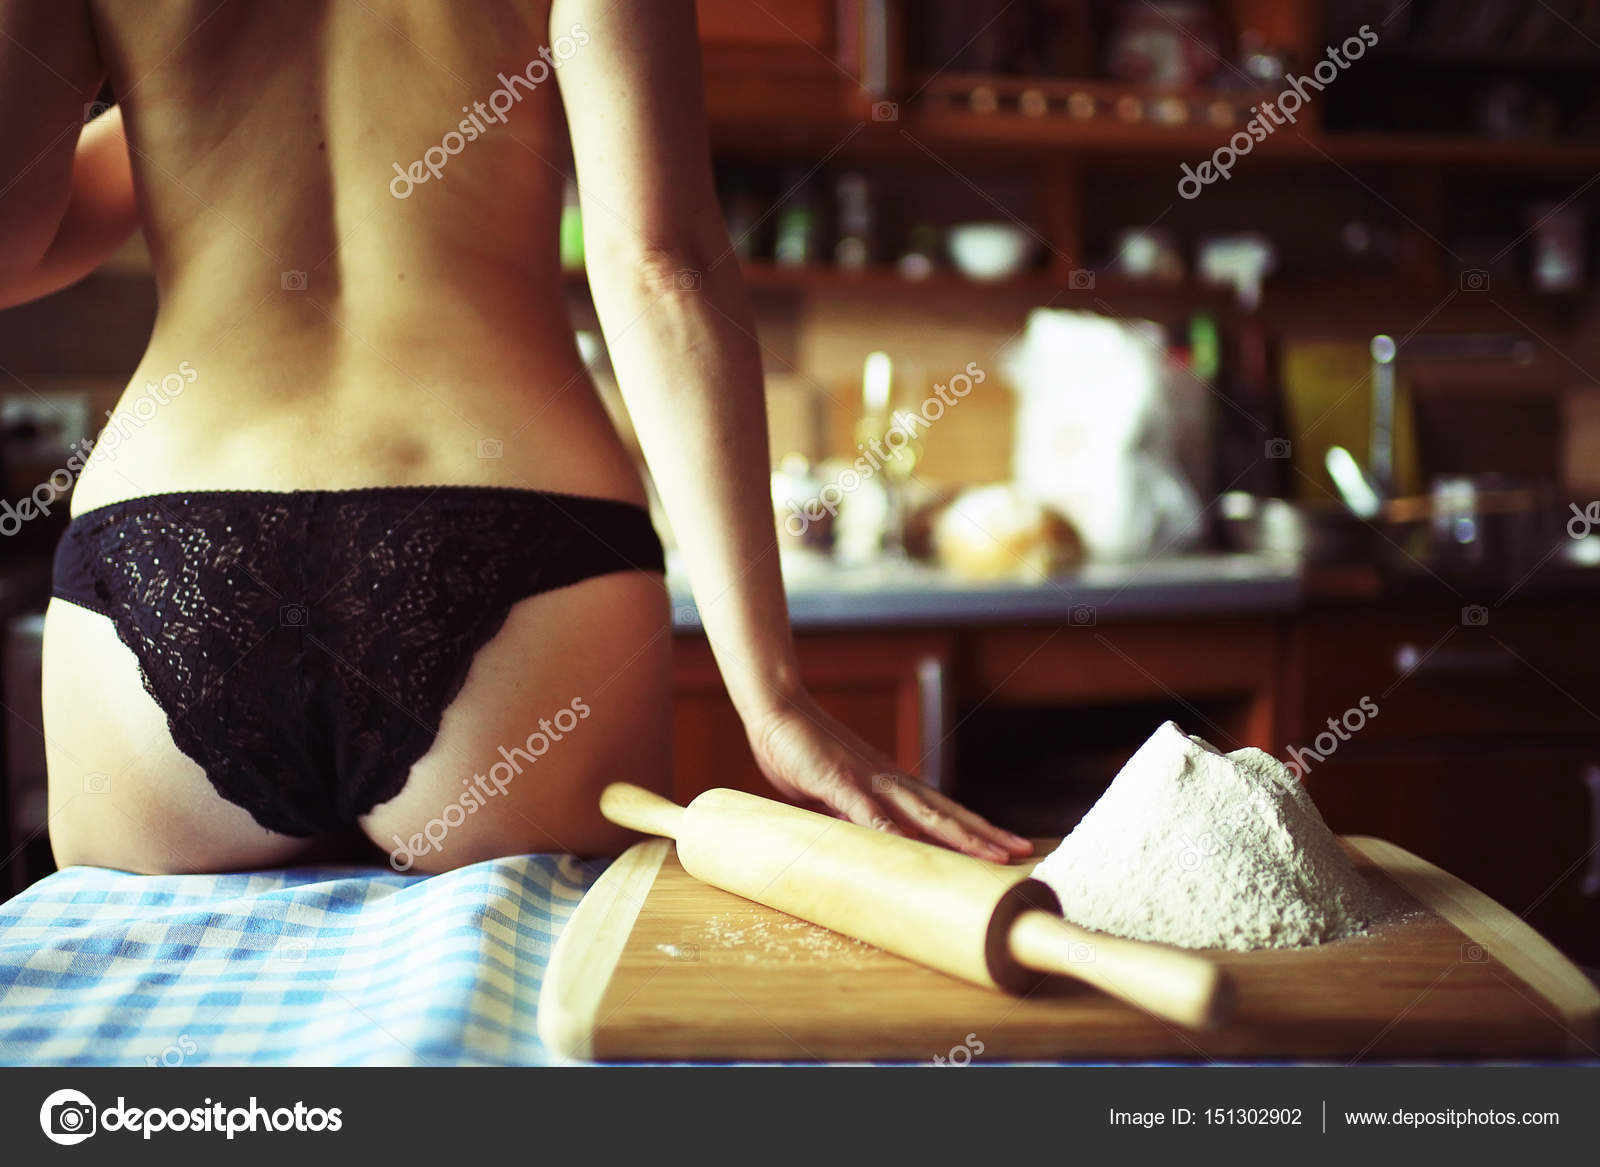 Girlfriend cooking breakfast in thong.